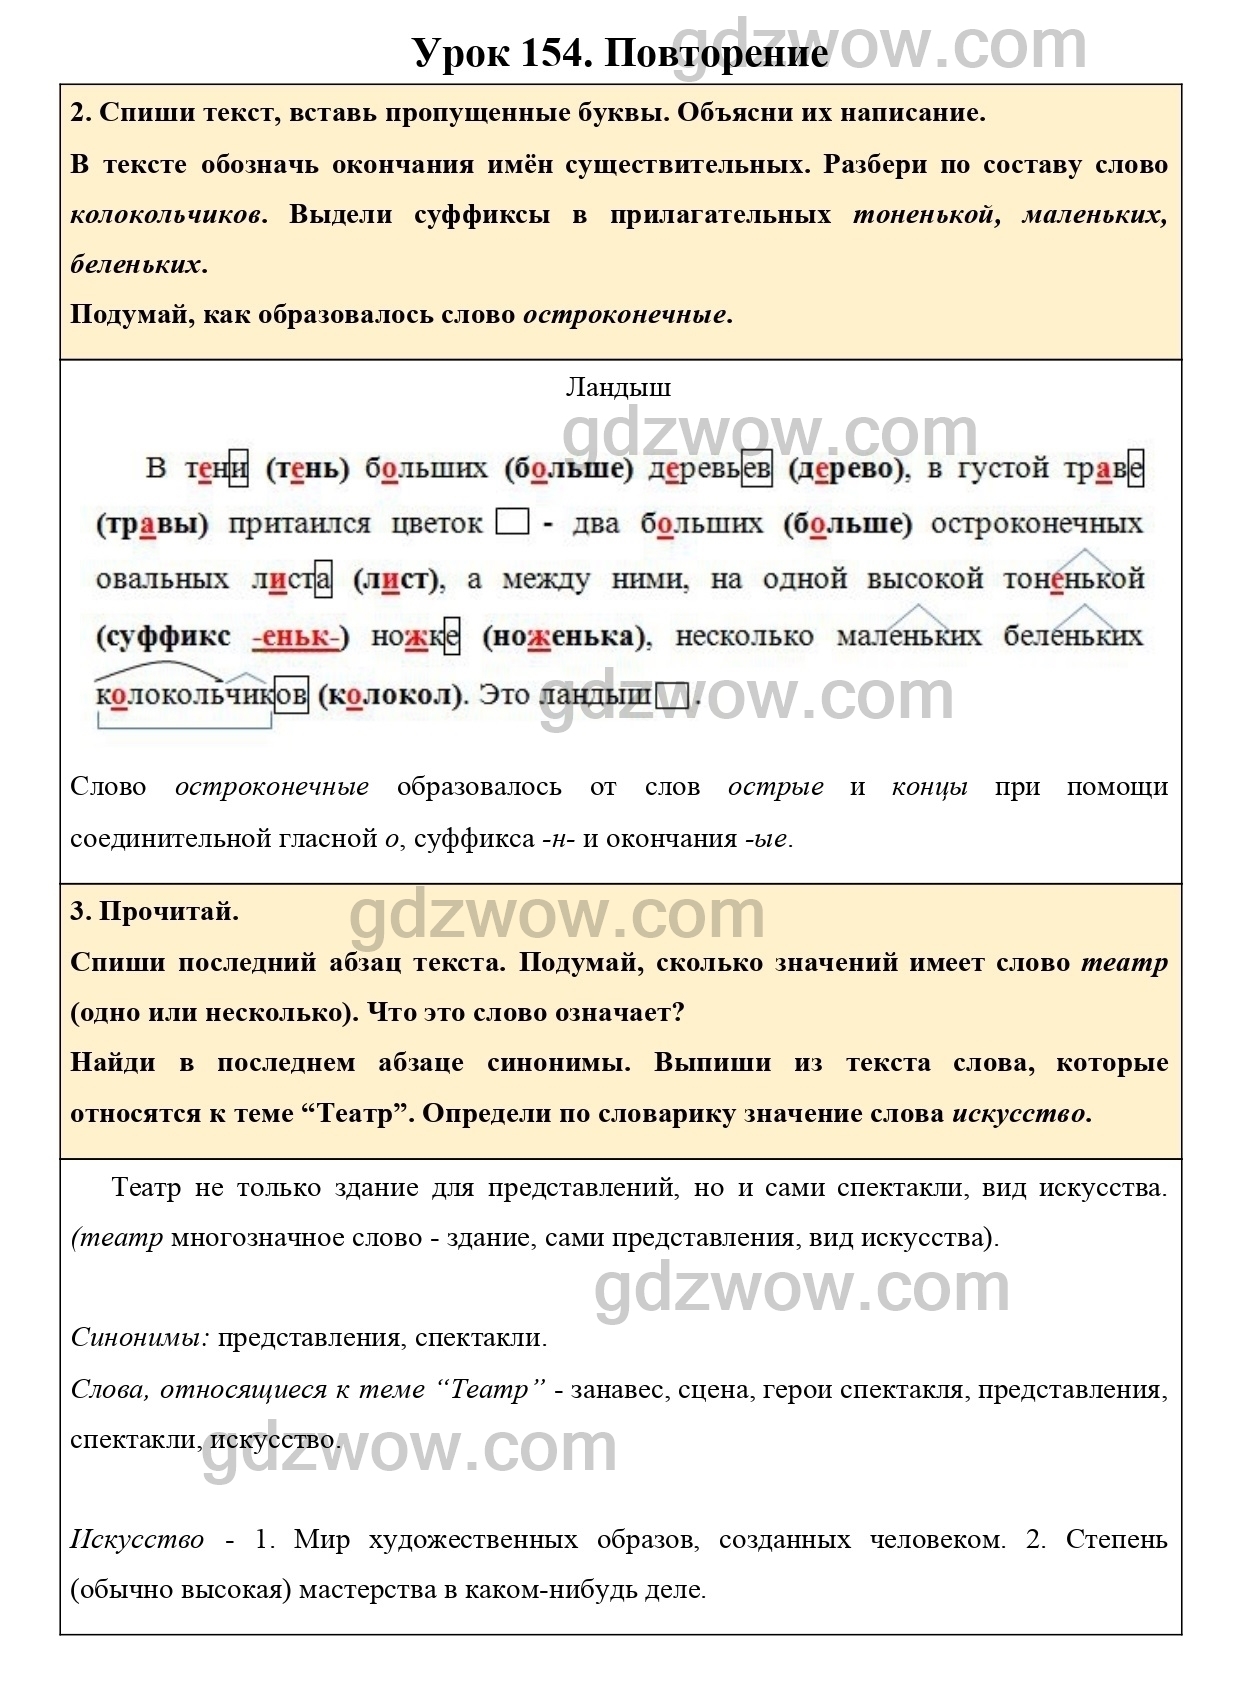 Спиши второй абзац текста обозначь окончания. Страница 148-149 учебника по русскому за второй класс.